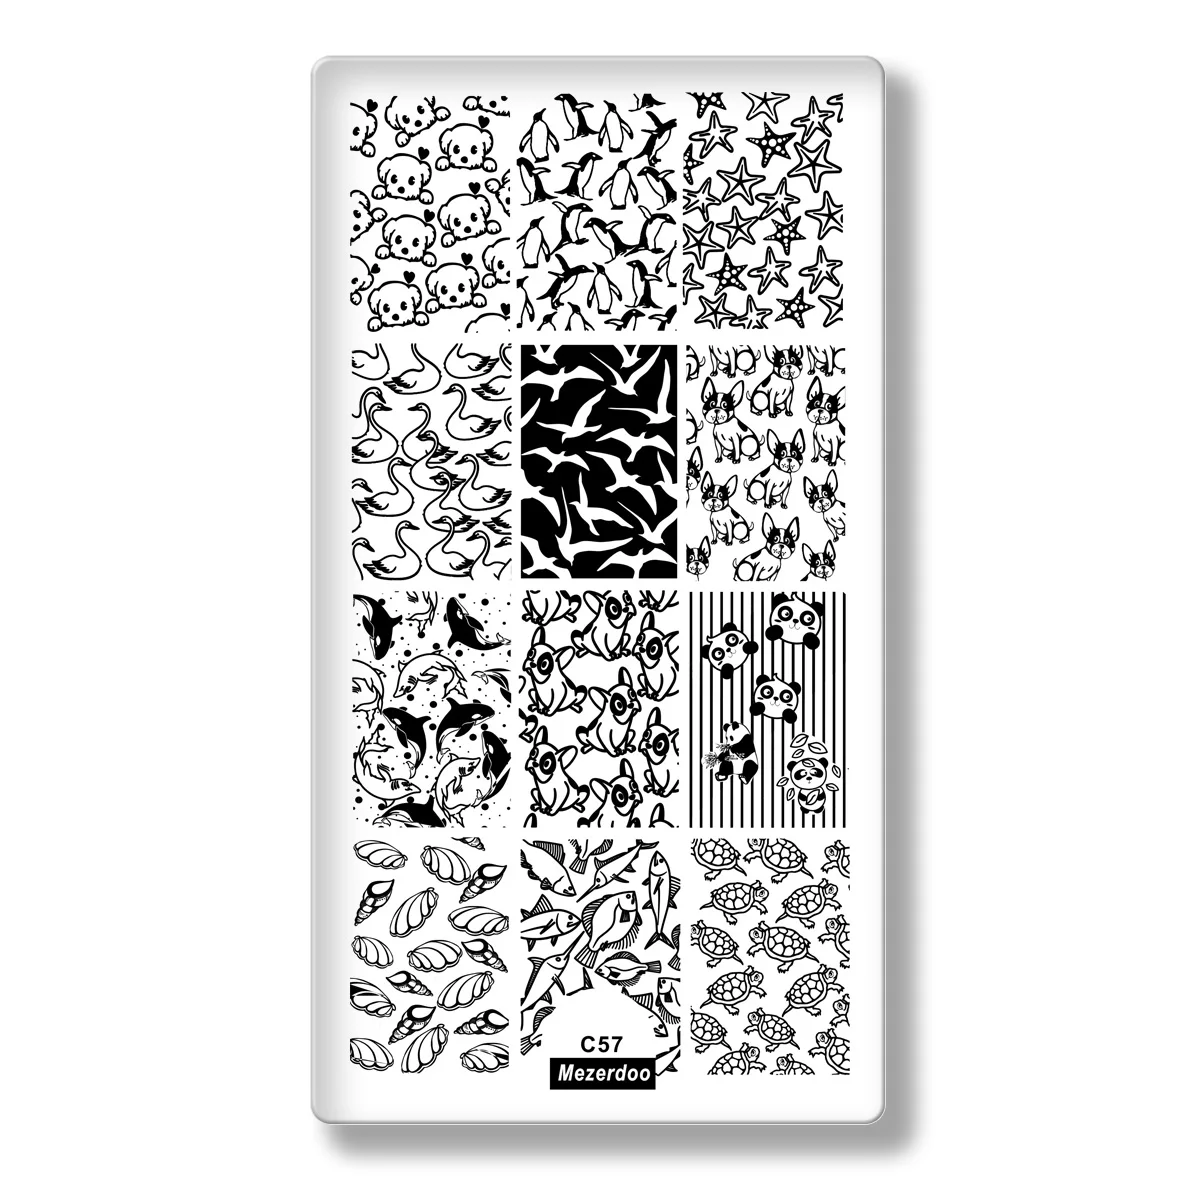 Цветочный лист тема прямоугольный, для нейл-арта штамп шаблон изображения пластины кружева сетки точечный узор ногтей штамповки пластины с белый пэд C49 - Цвет: C-57